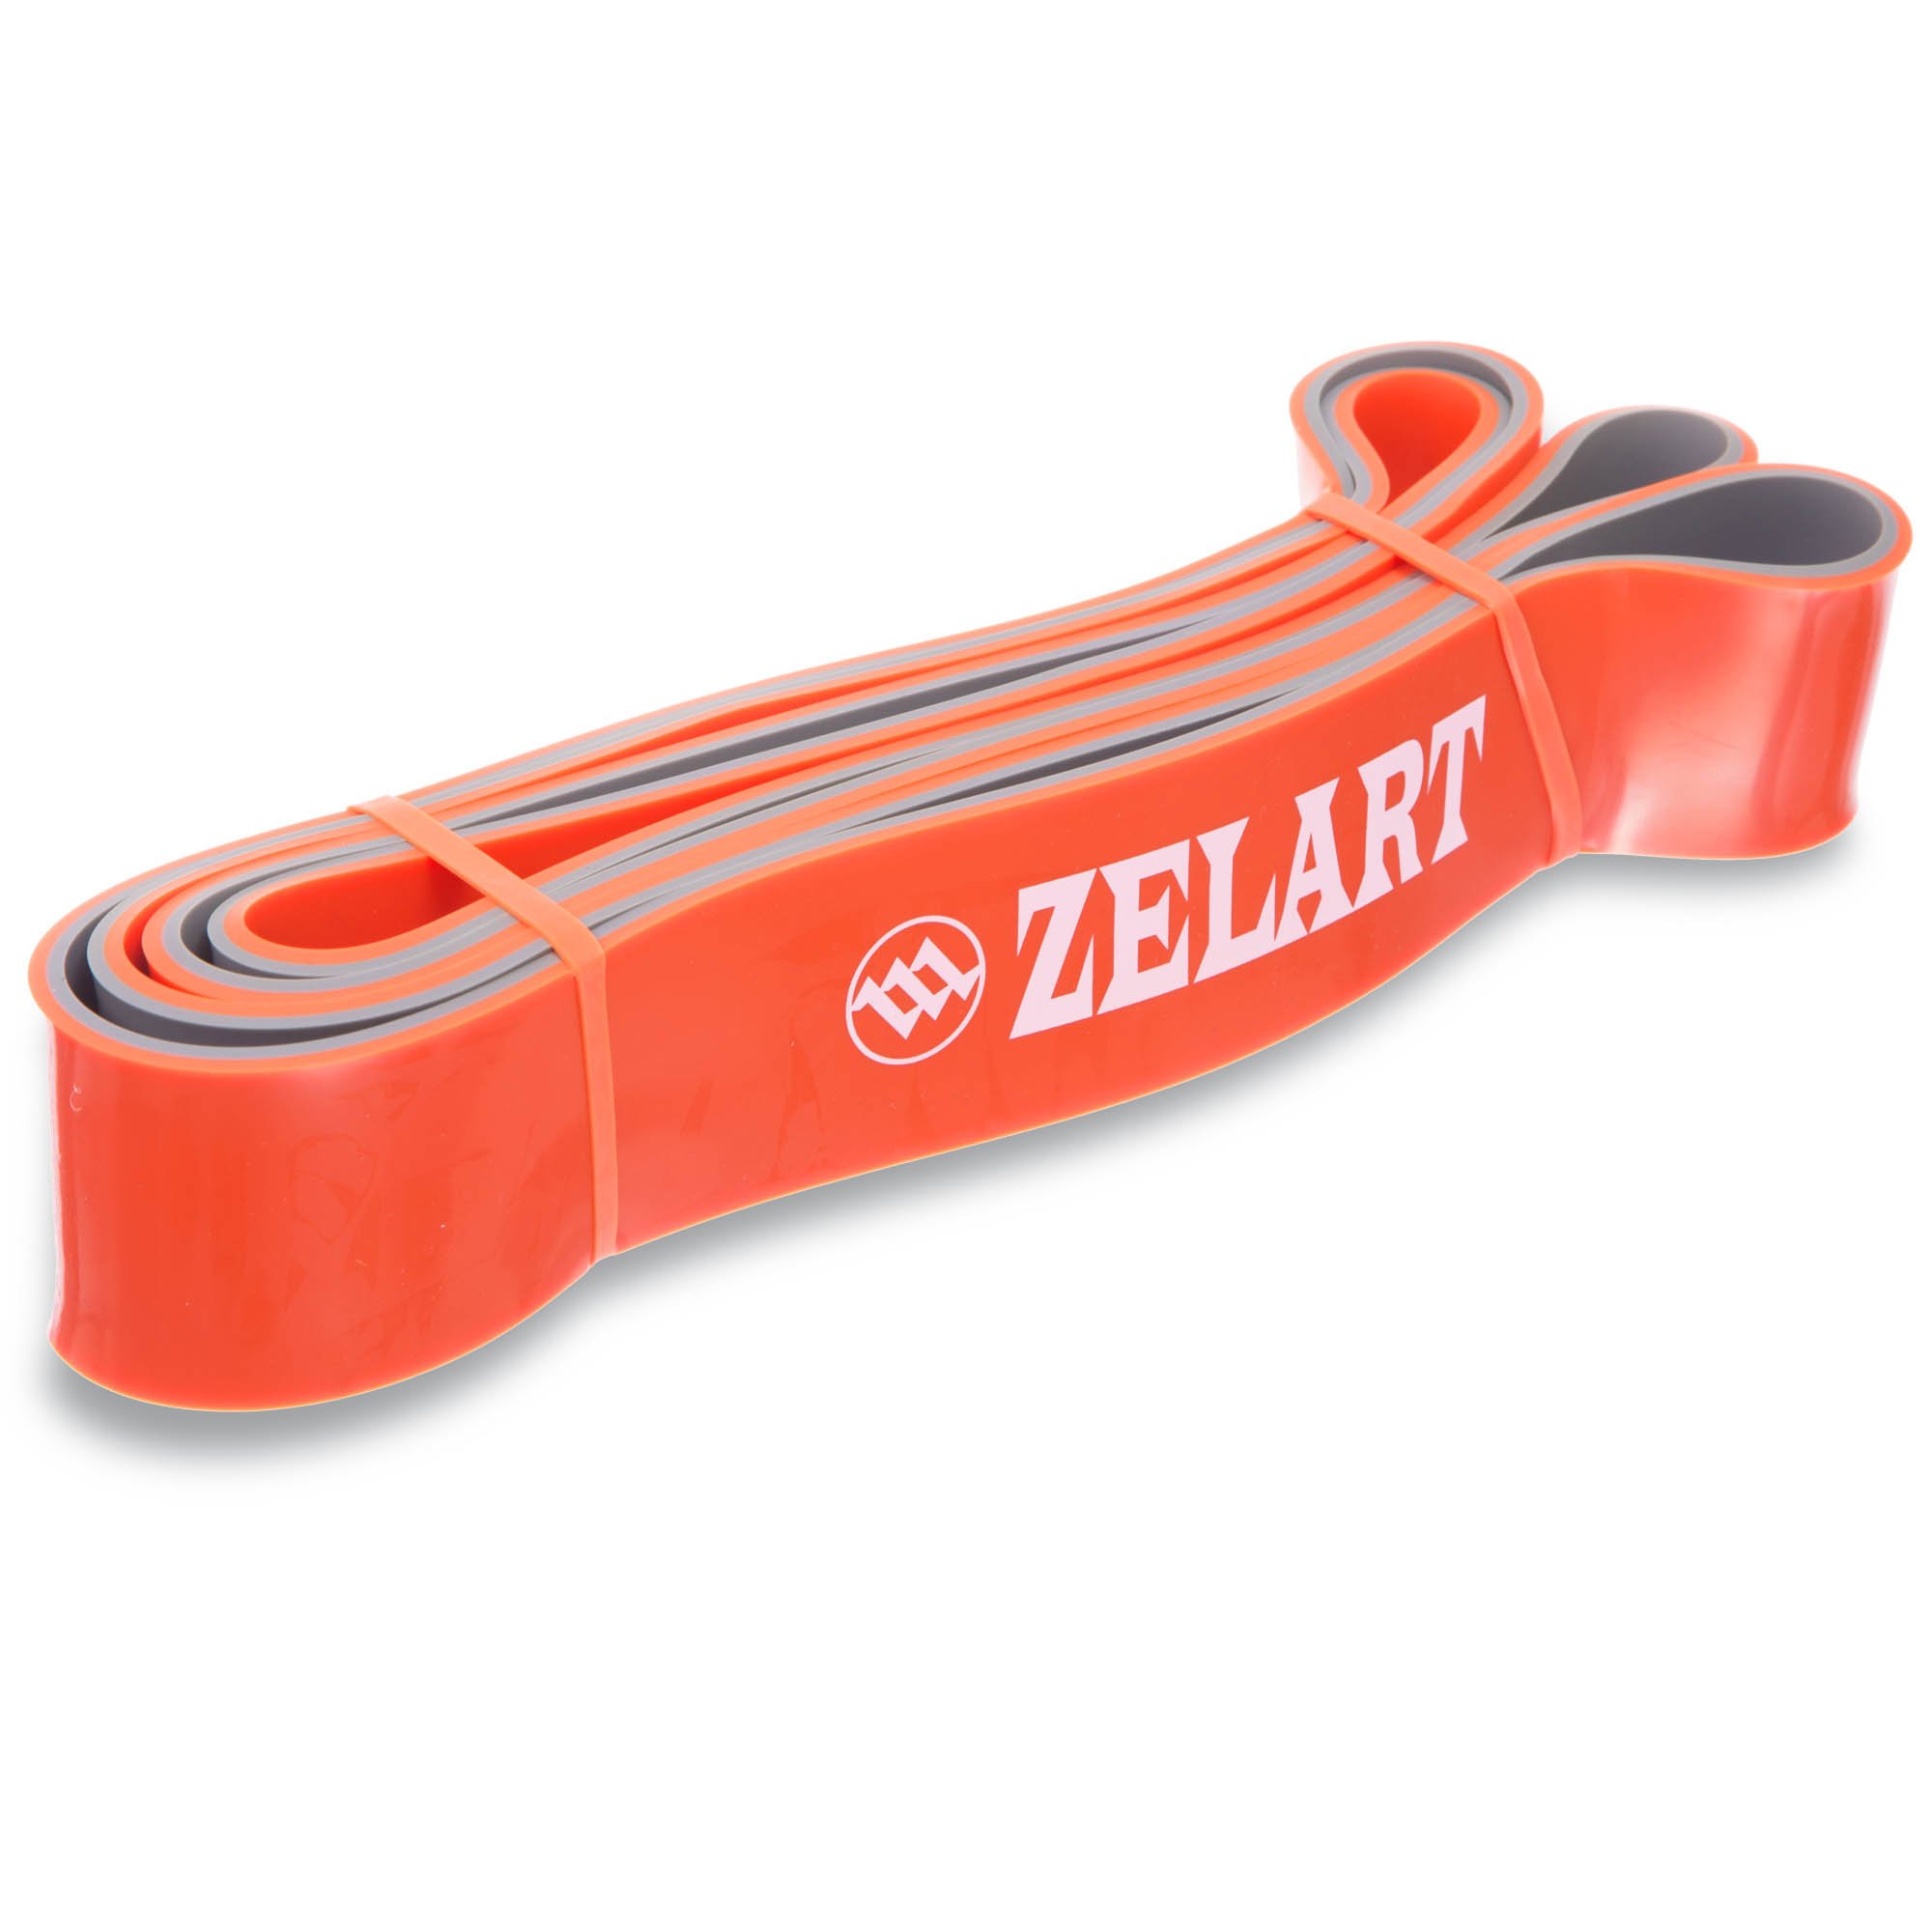 Zelart резинка. Резину для подтягивания Zelart. Эспандер лента кольцо 2080x4.5x10 мм 2-15 кг (двухцветн). Резиновые петли Power Band. Резина для подтягивания купить